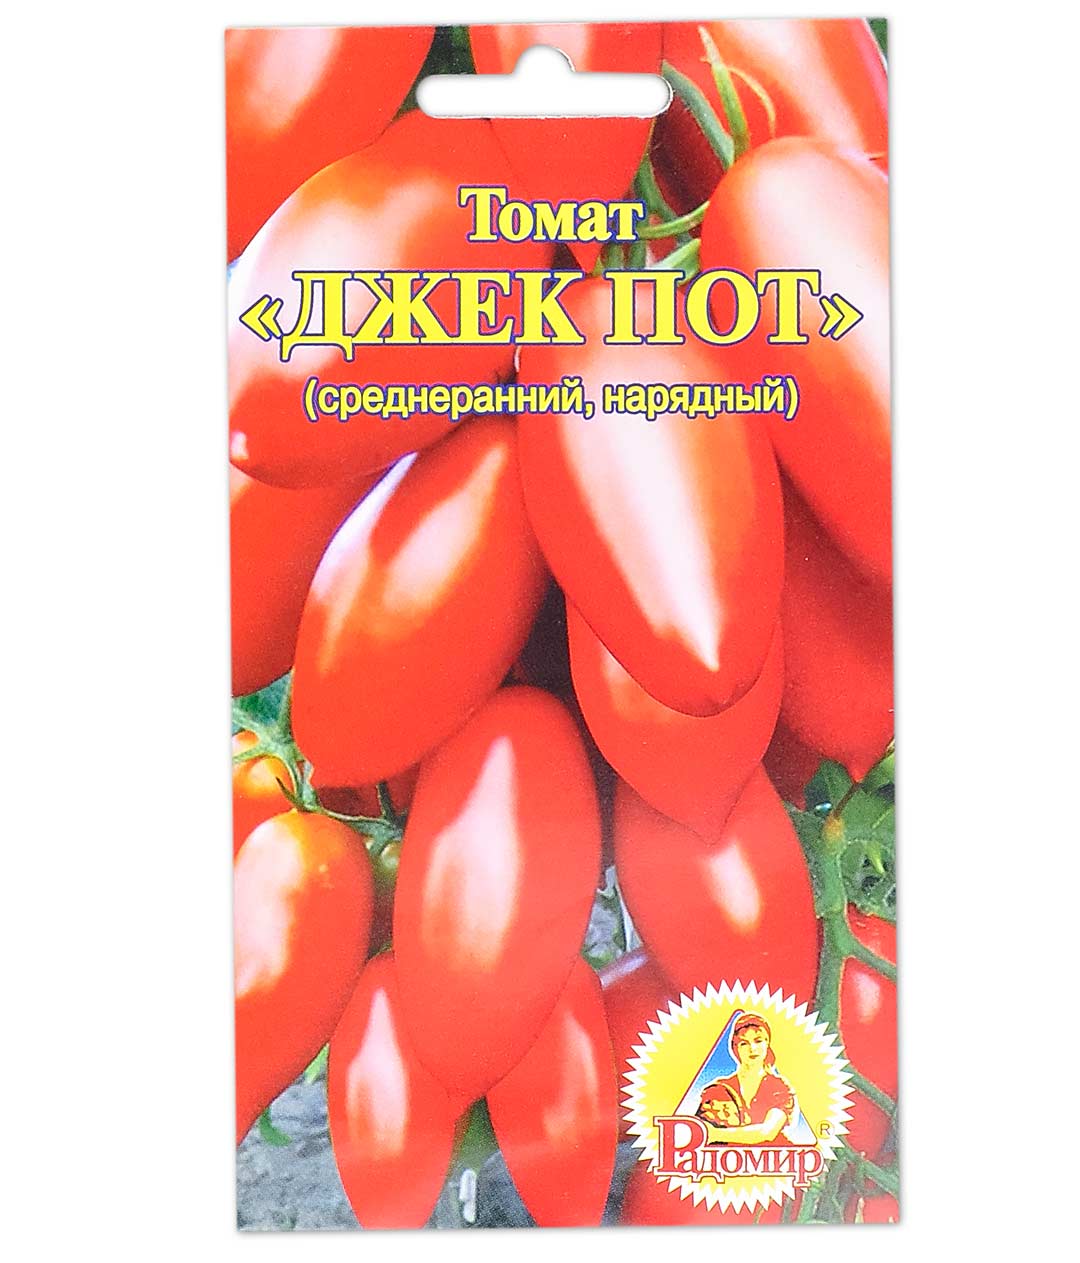 помидоры джекпот описание фото отзывы цена сорта